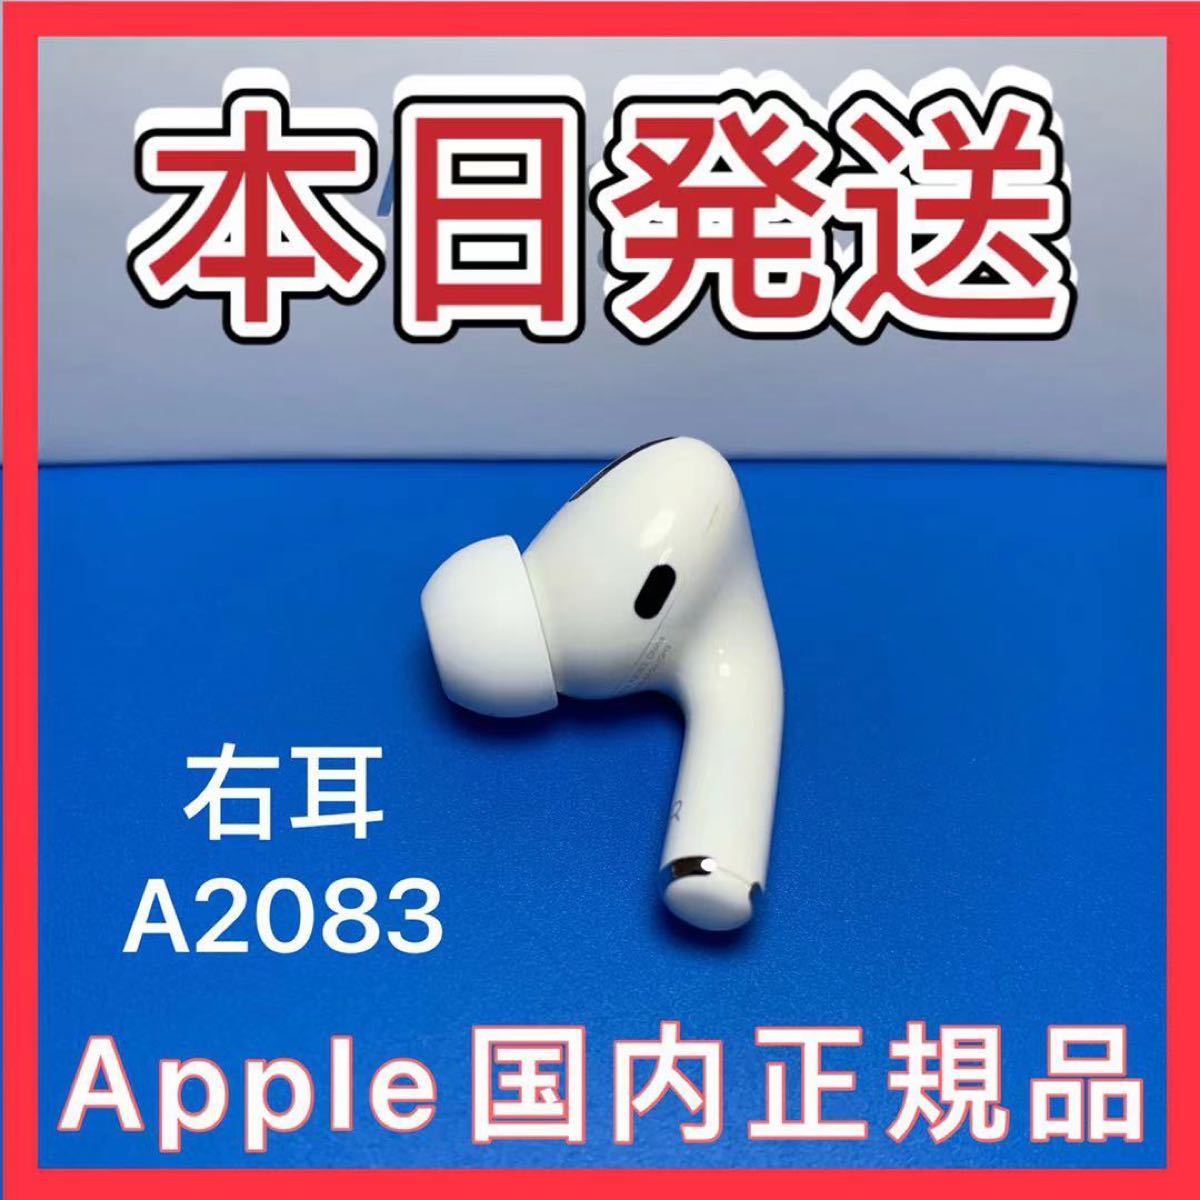 エアーポッズ 新品プロR片耳 AirPodsPro右耳のみ Apple国内正規品 